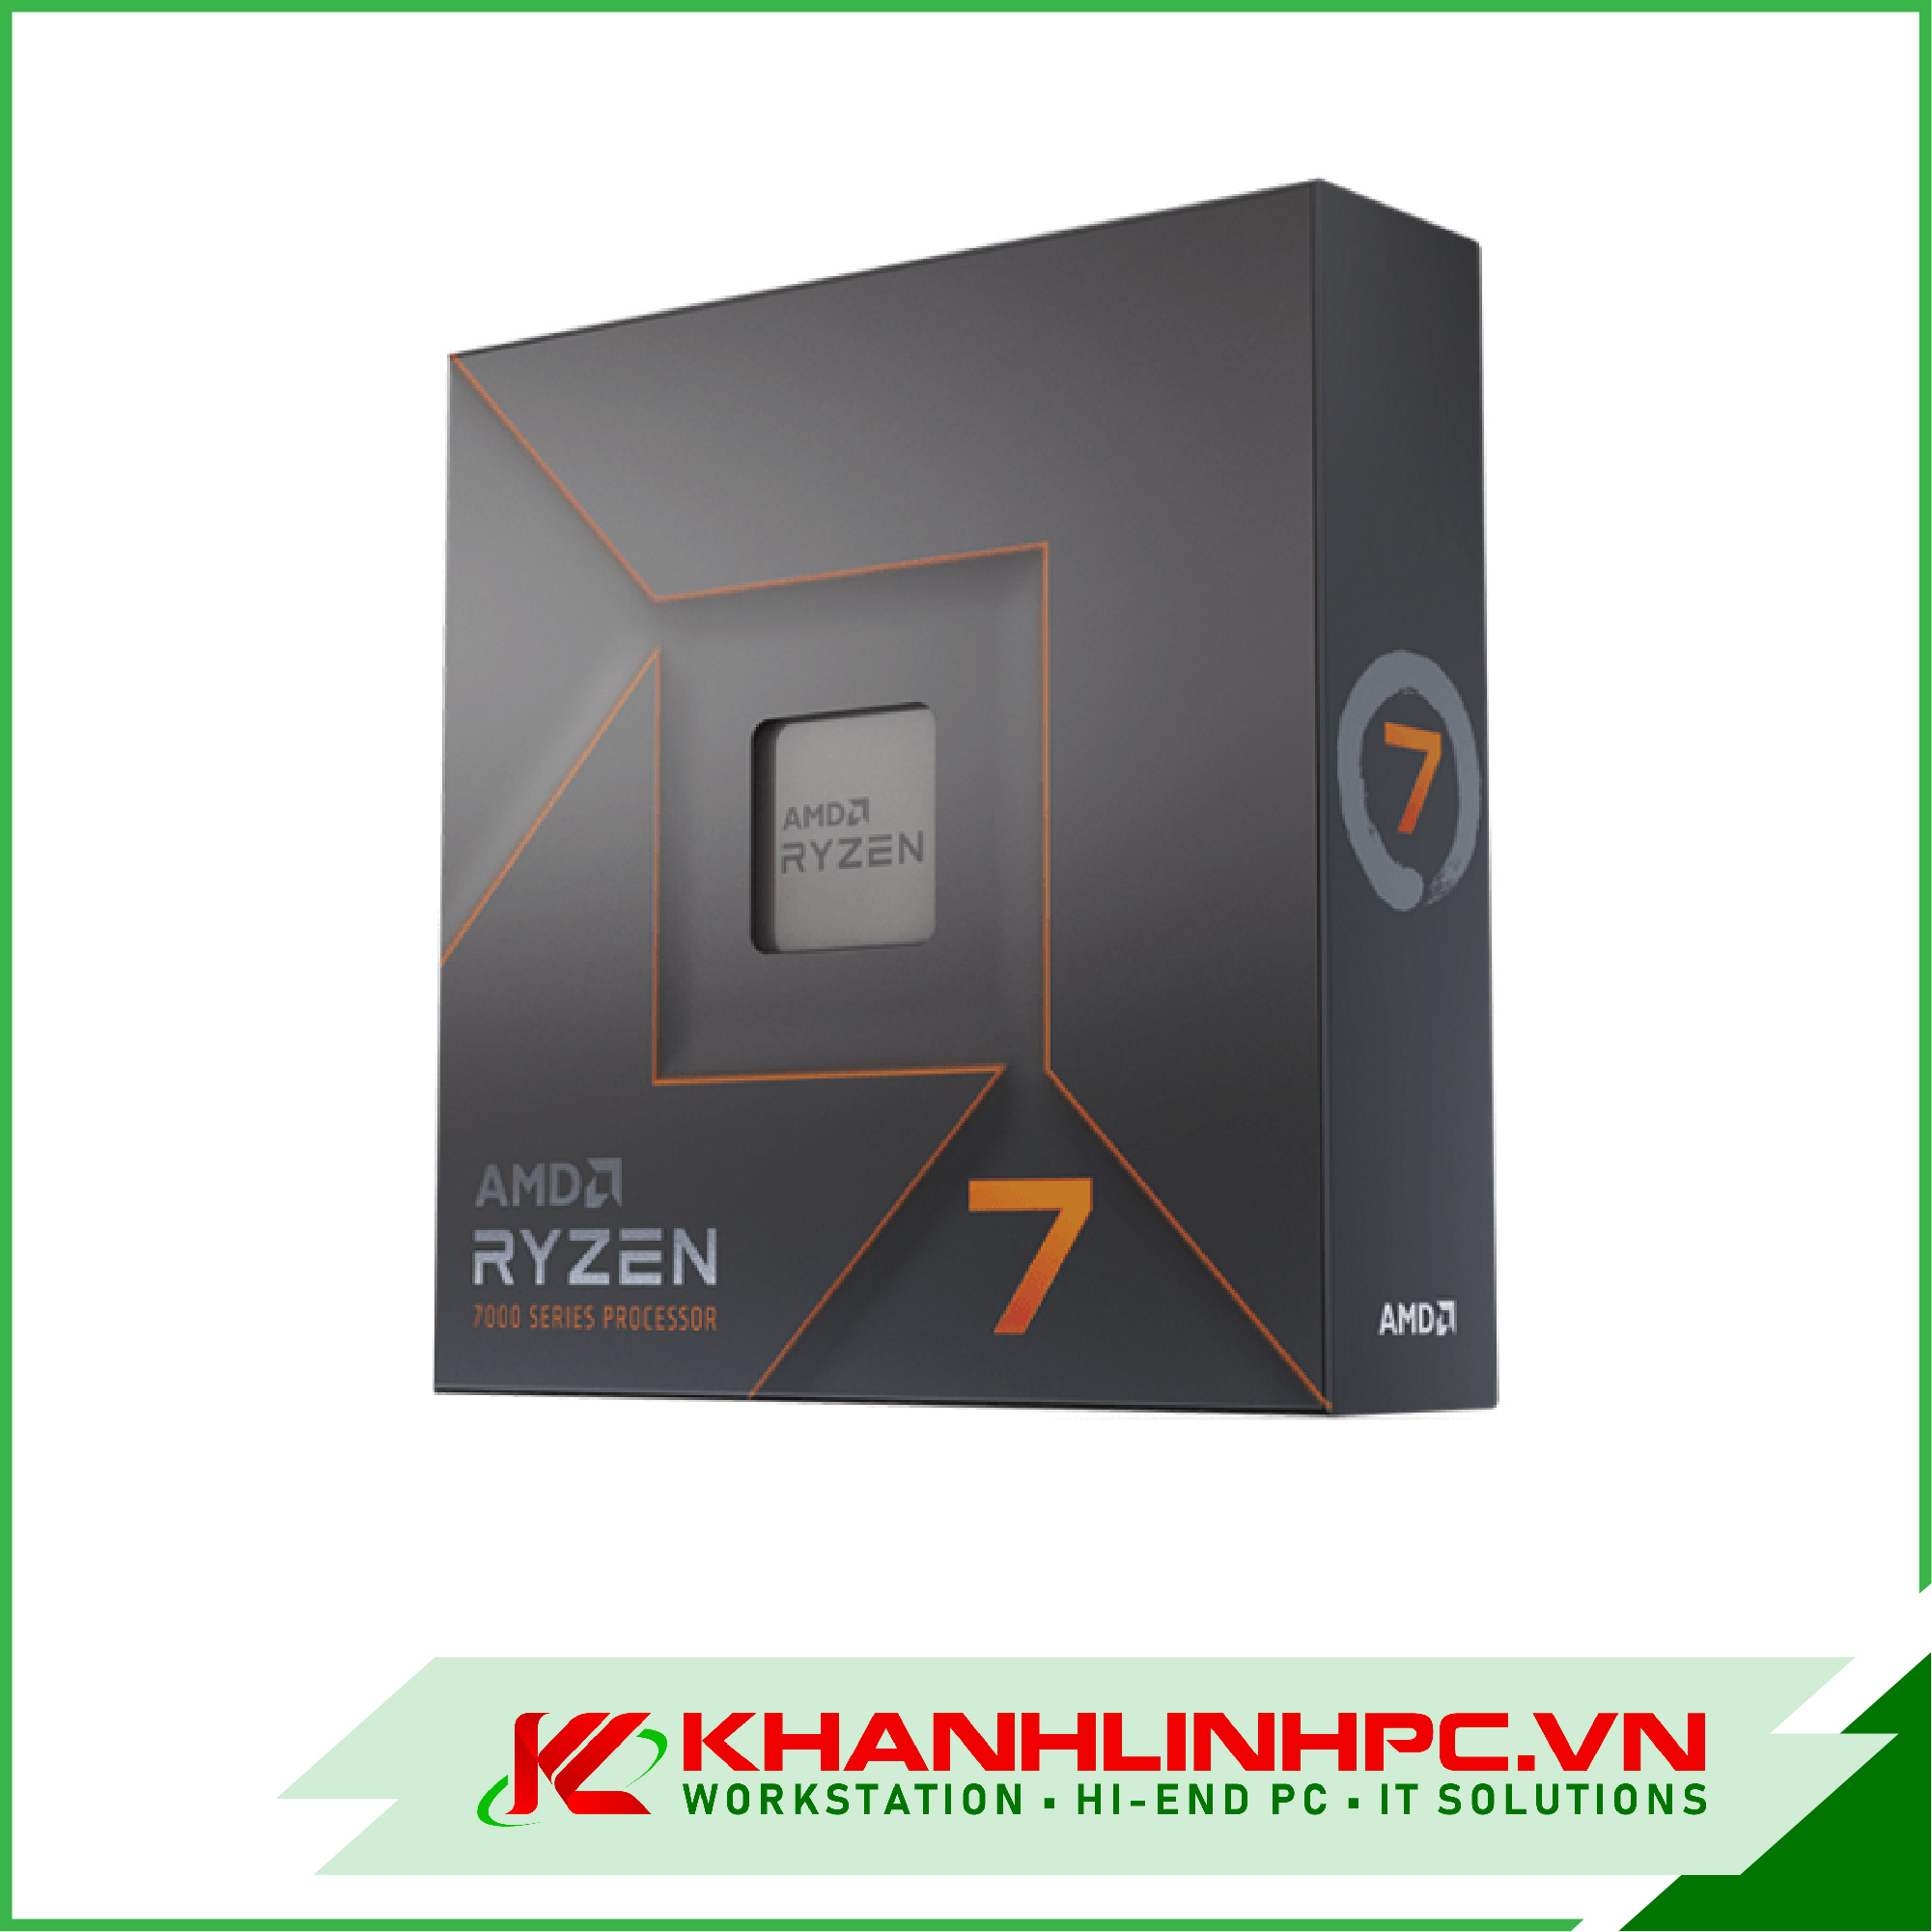 amd ryzen 7 7700x processor - 8 nhân 16 luồng, 4.5 ghz up to 5.4 ghz, am5 zen 4